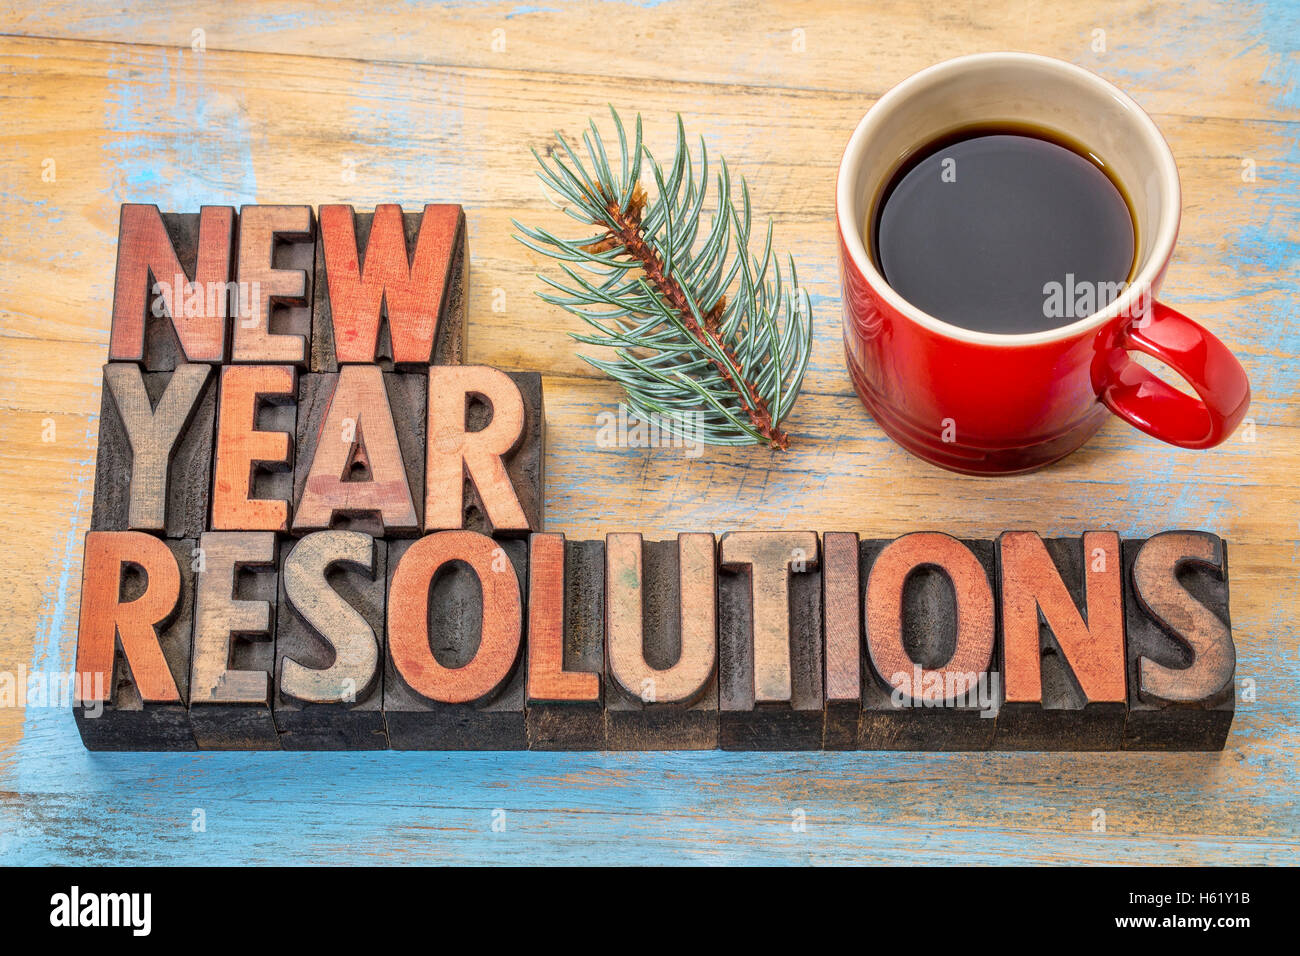 Résolutions pour la nouvelle année - Résumé en Word typographie vintage bois type avec une tasse de café et un rameau de chêne d'argent Banque D'Images